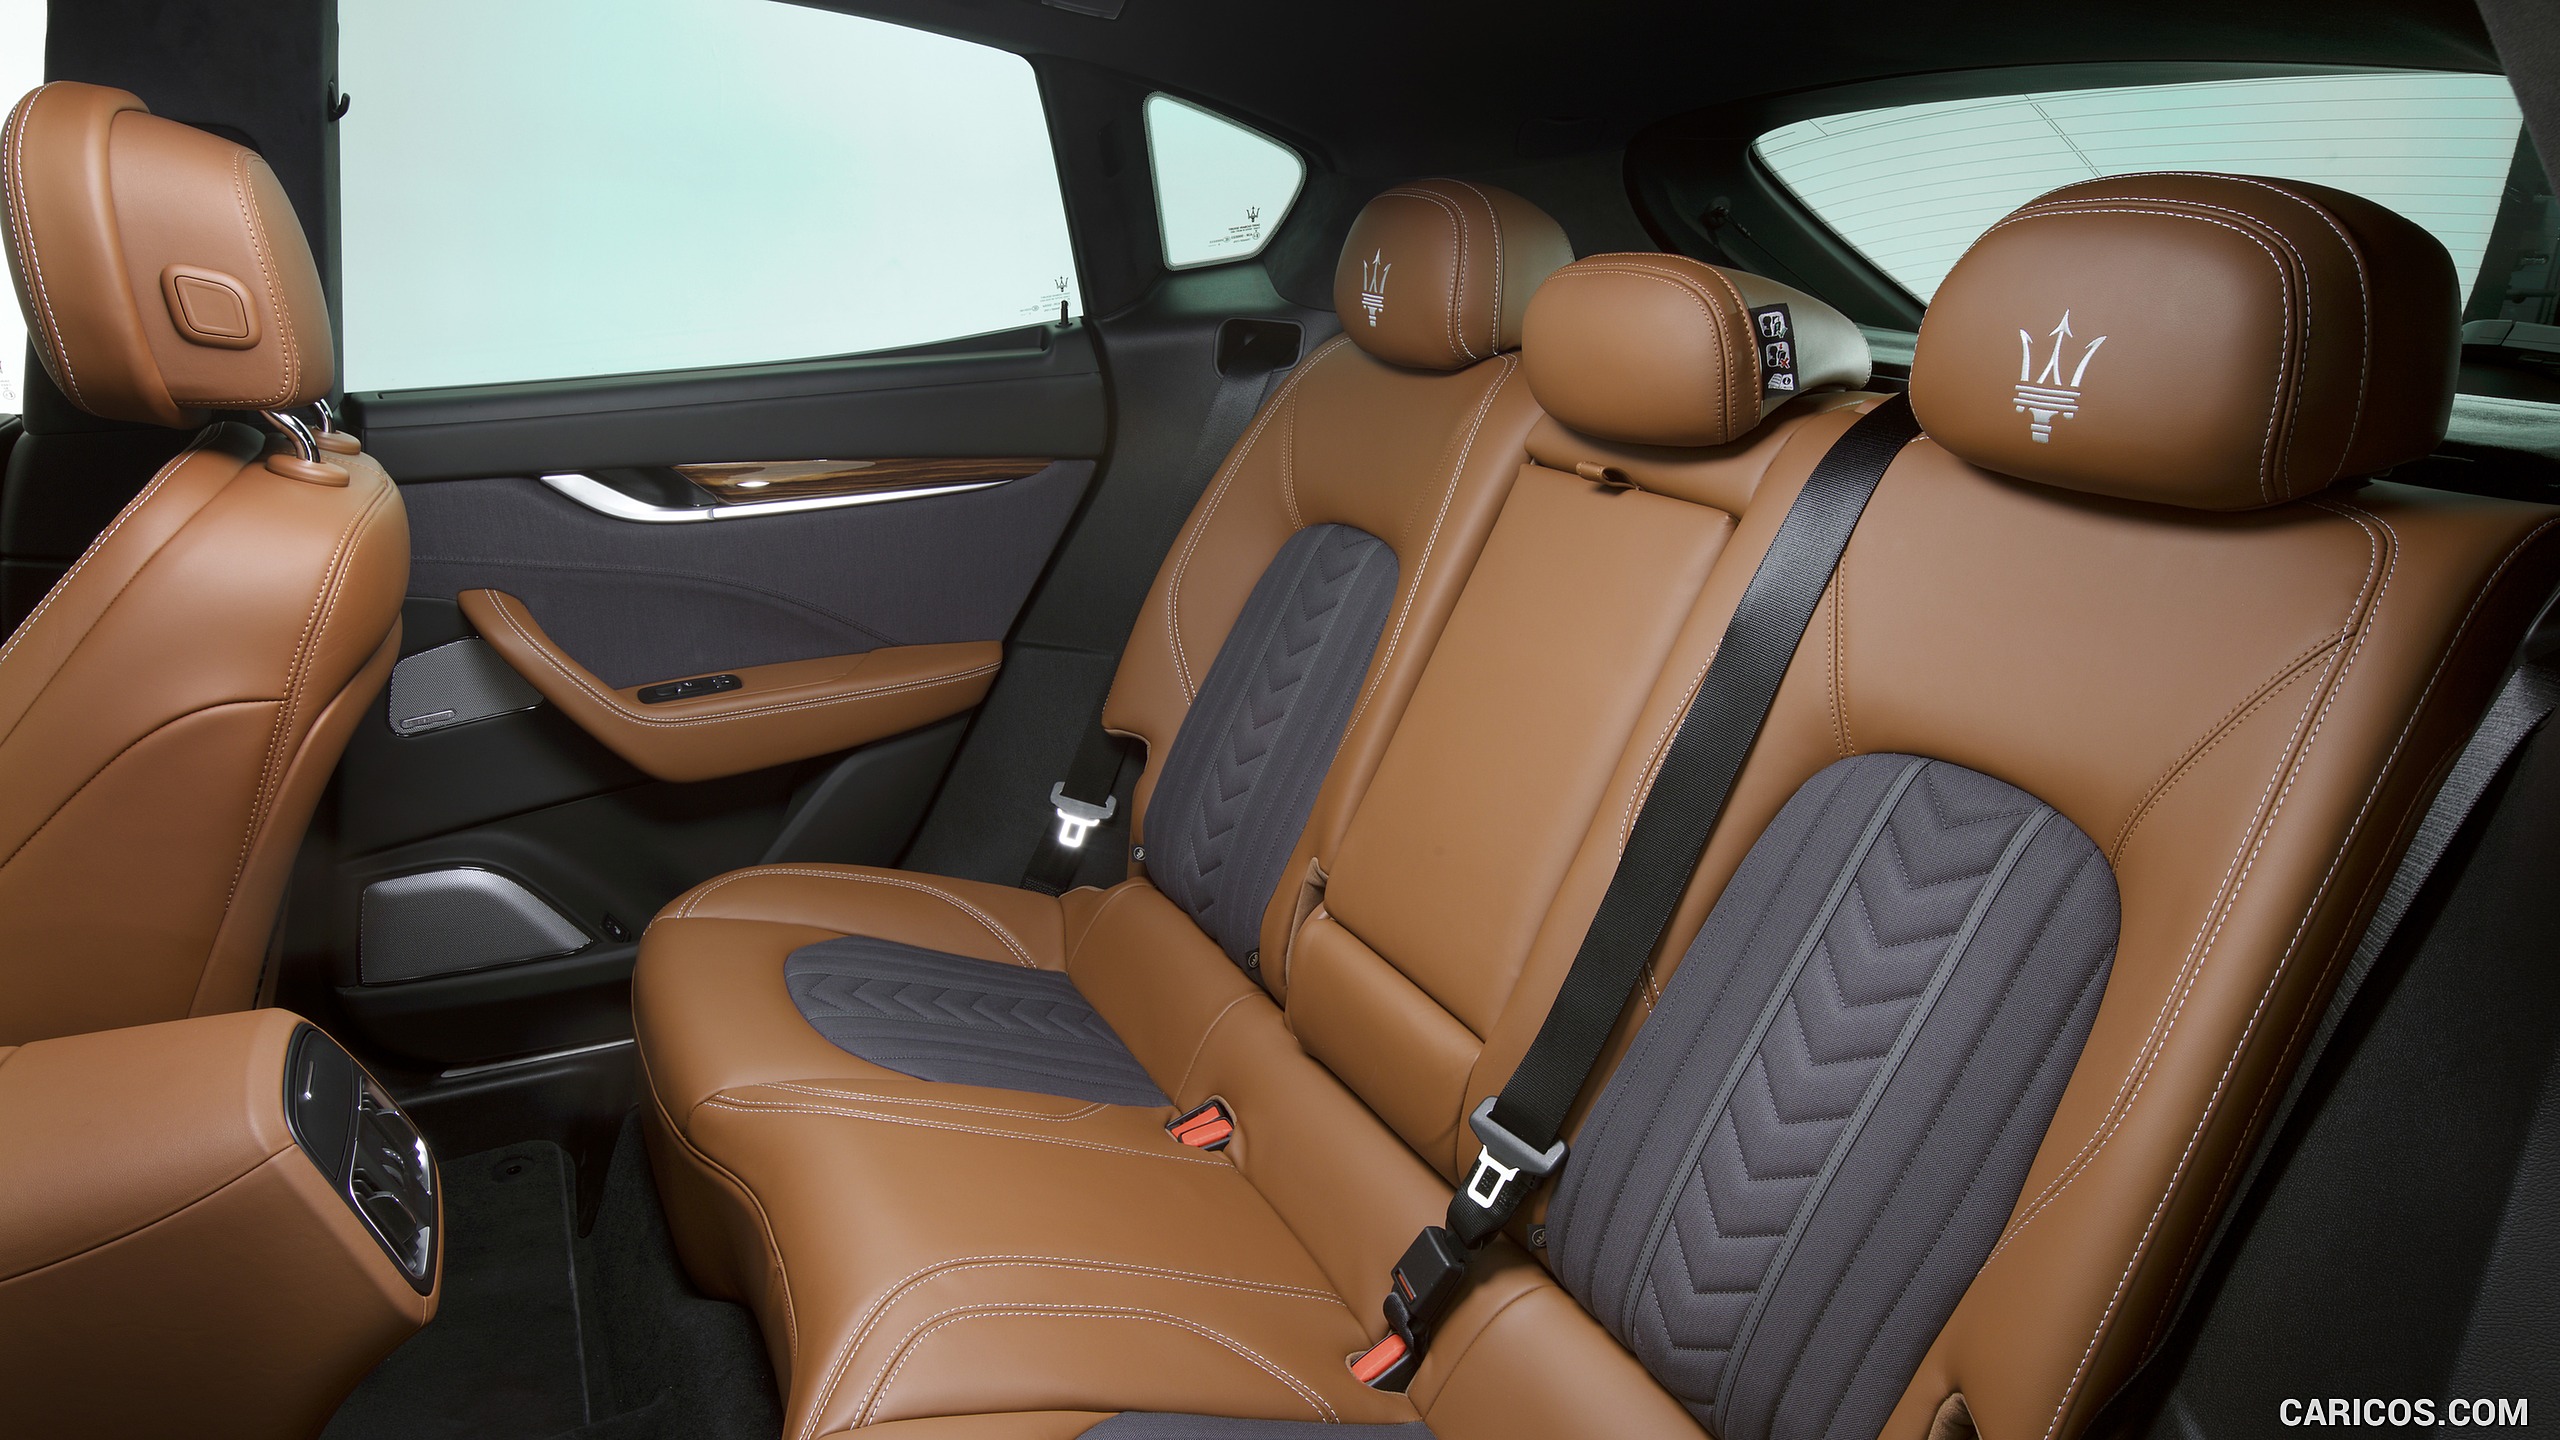 2017 Maserati Levante SUV Ermenegildo Zegna Edition - Interior, Rear Seats, #93 of 119